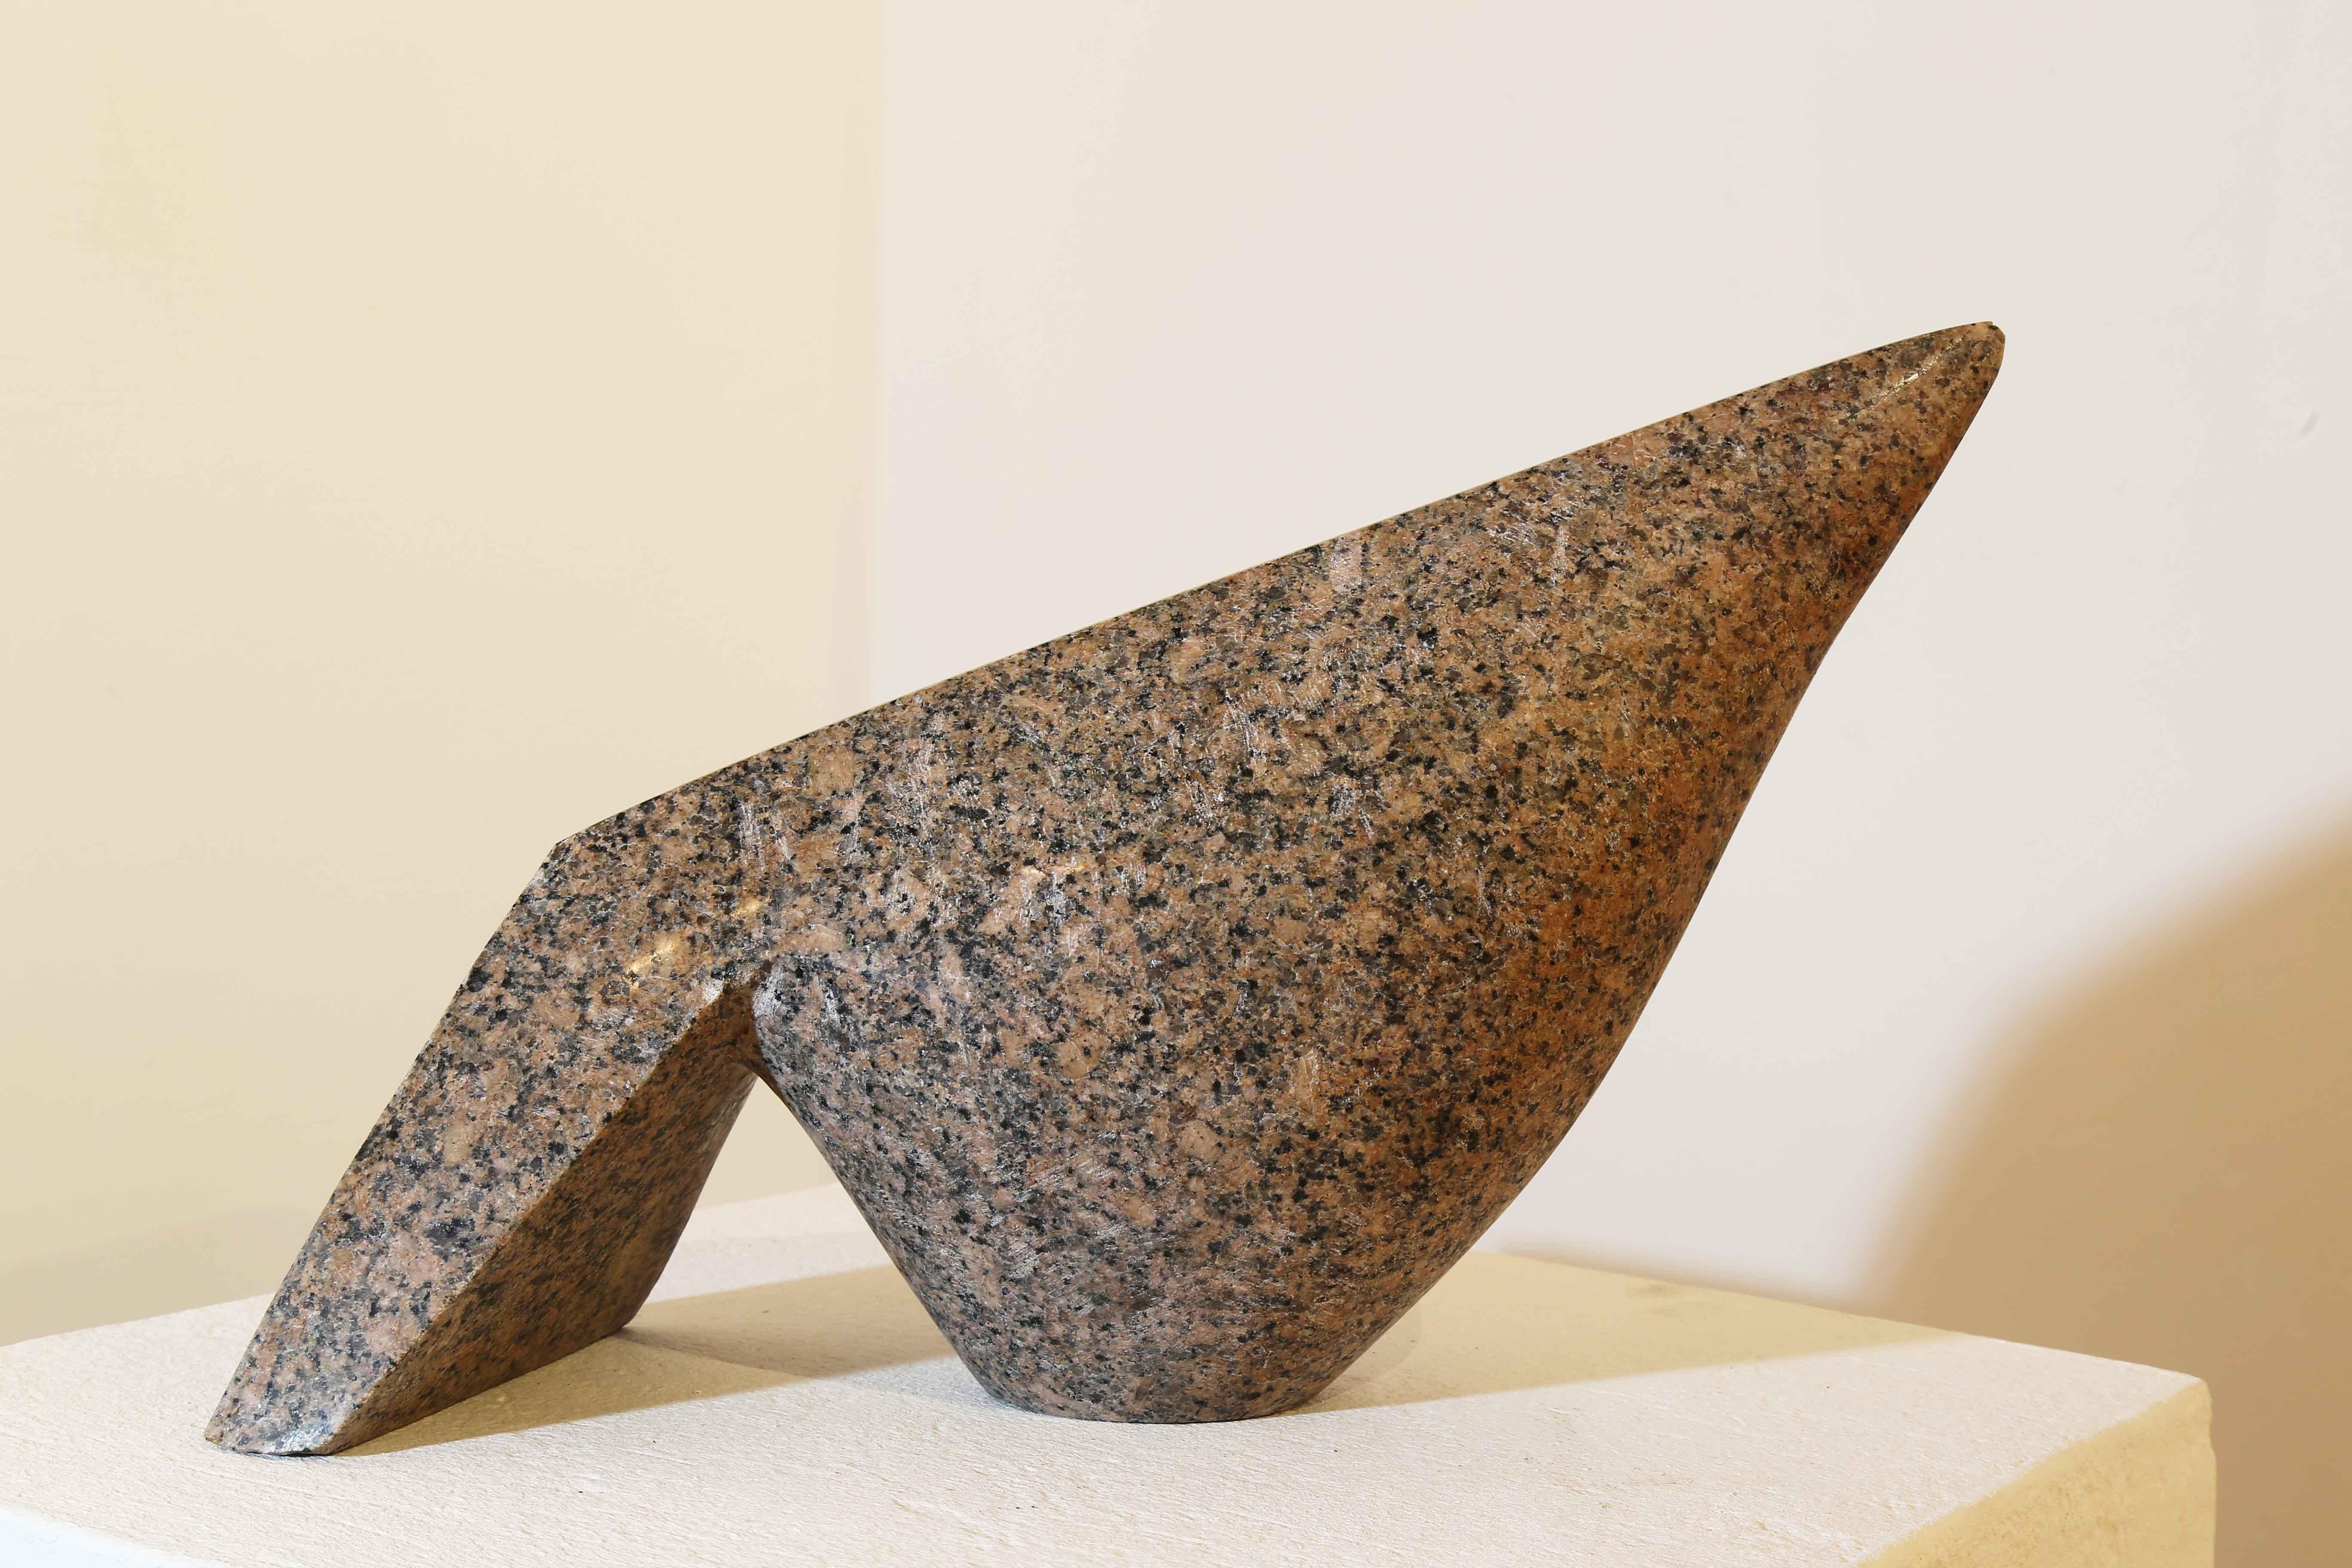 Sculpture en granit rouge "Le Pigeon" 10" x 14" x 5" pouces par Eman Barakat

Eman Barakat est un artiste égyptien d'après-guerre et contemporain né en 1988. Leurs travaux ont fait l'objet de plusieurs expositions dans des galeries et musées